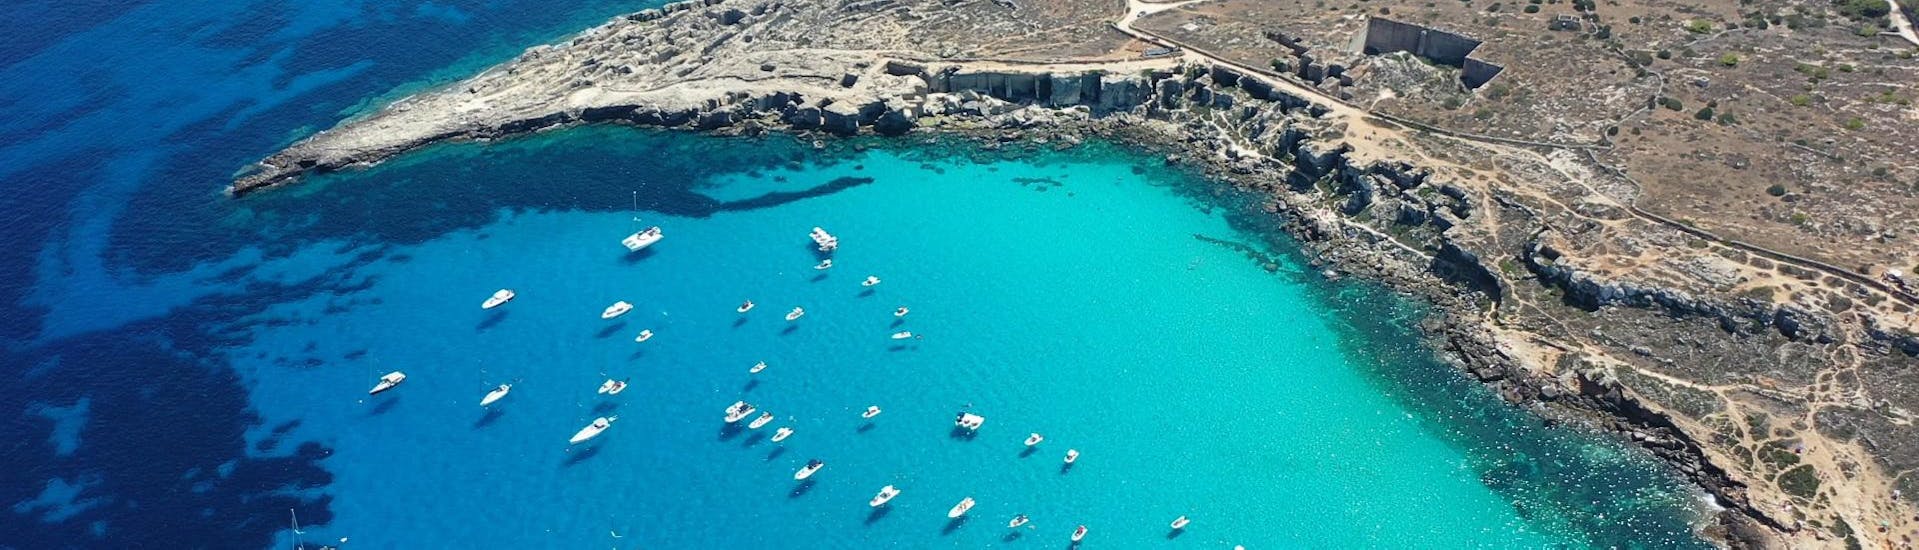 Potrete immergervi nello splendido mare delle Isole Egadi durante una delle nostre escursioni in barca.